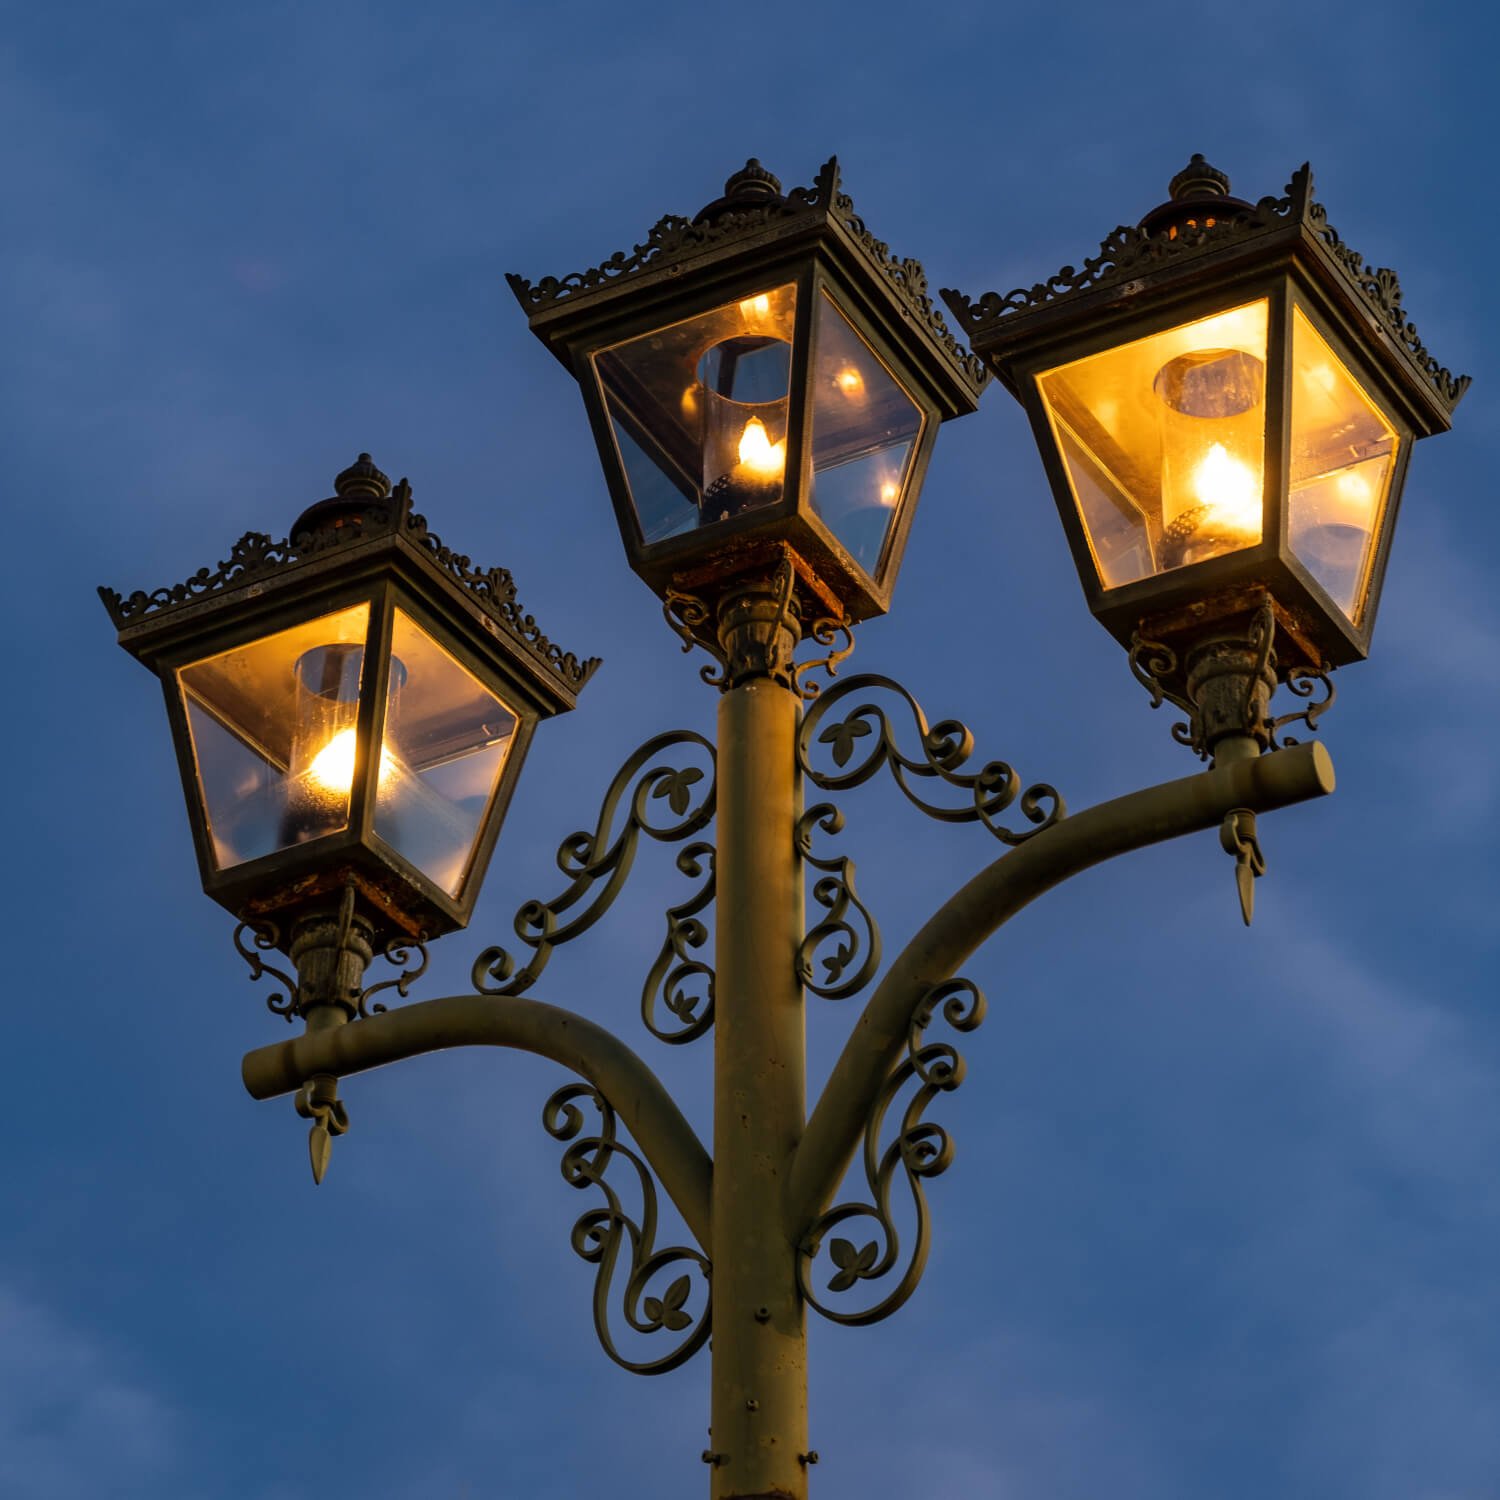 茂原駅東口側のガス燈。南口側には意匠の異なるガス燈が立つ。